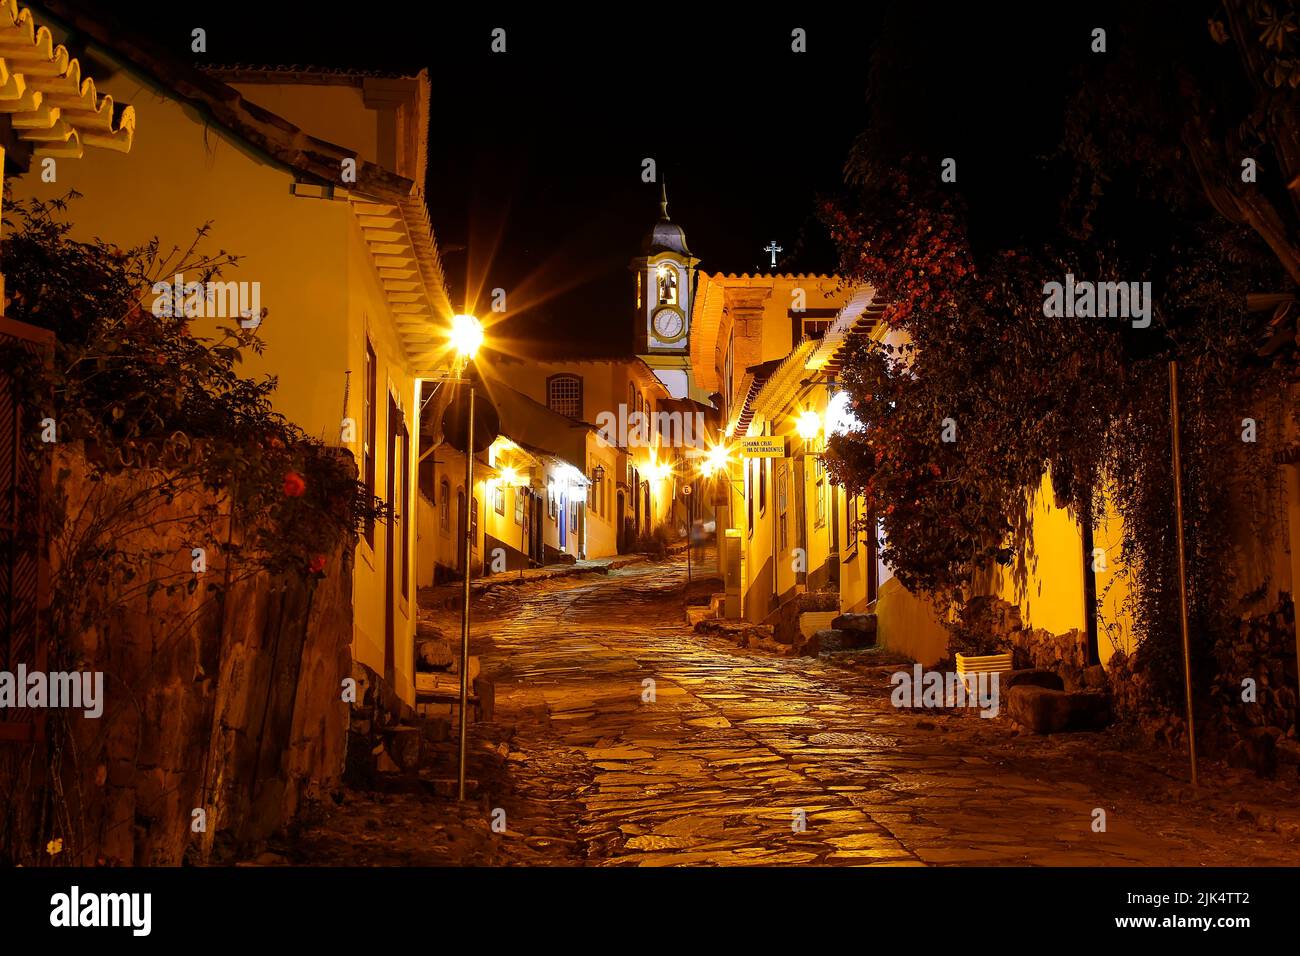 Vue nocturne de la rue et de l'église de santo antonio sur la ville historique de Tiradentes, intérieur de Minas Gerais Banque D'Images